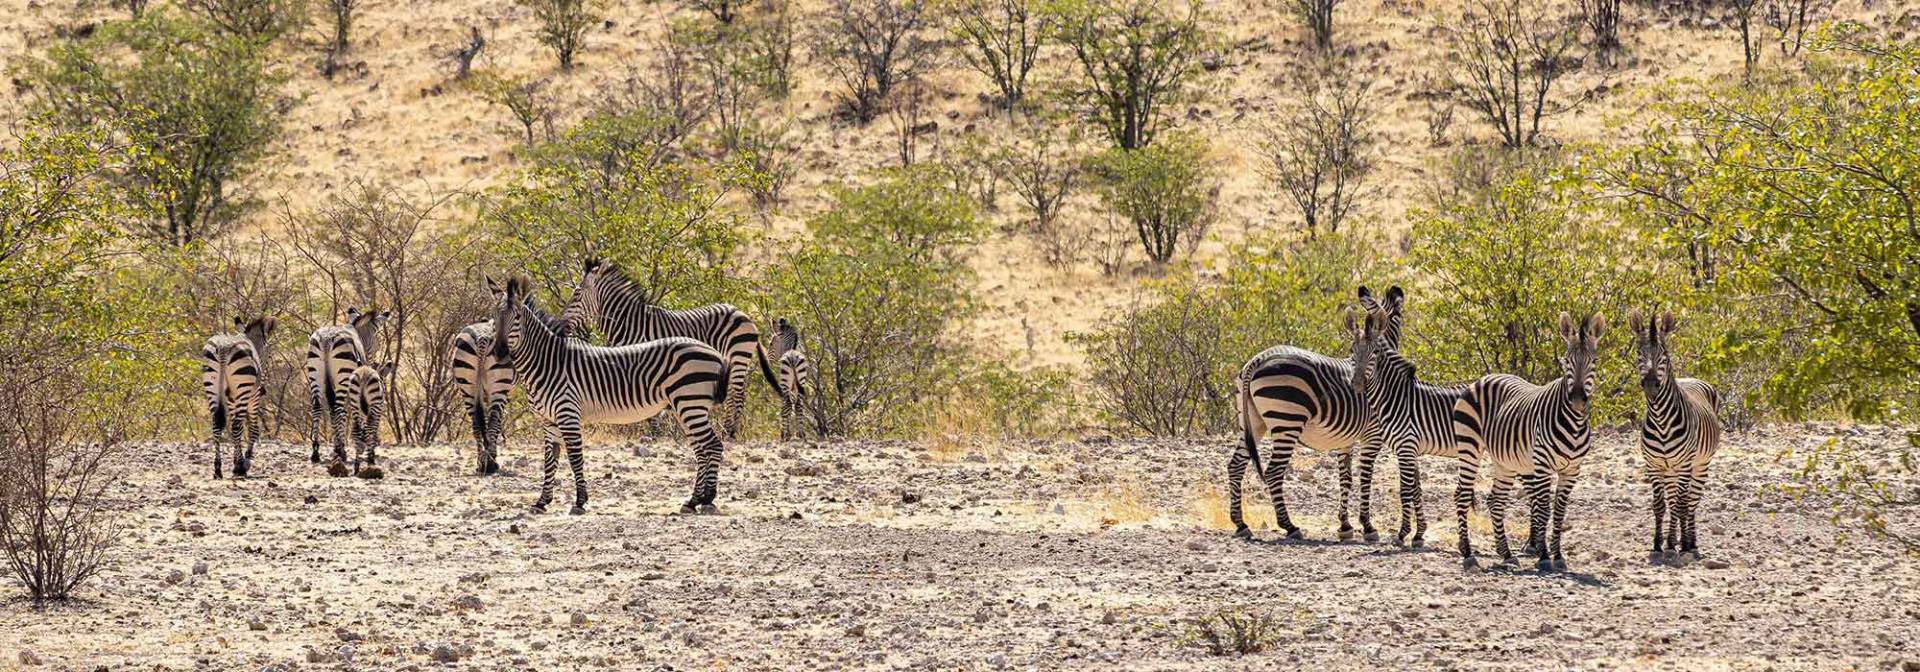 Zebras im Nordwesten Namibias